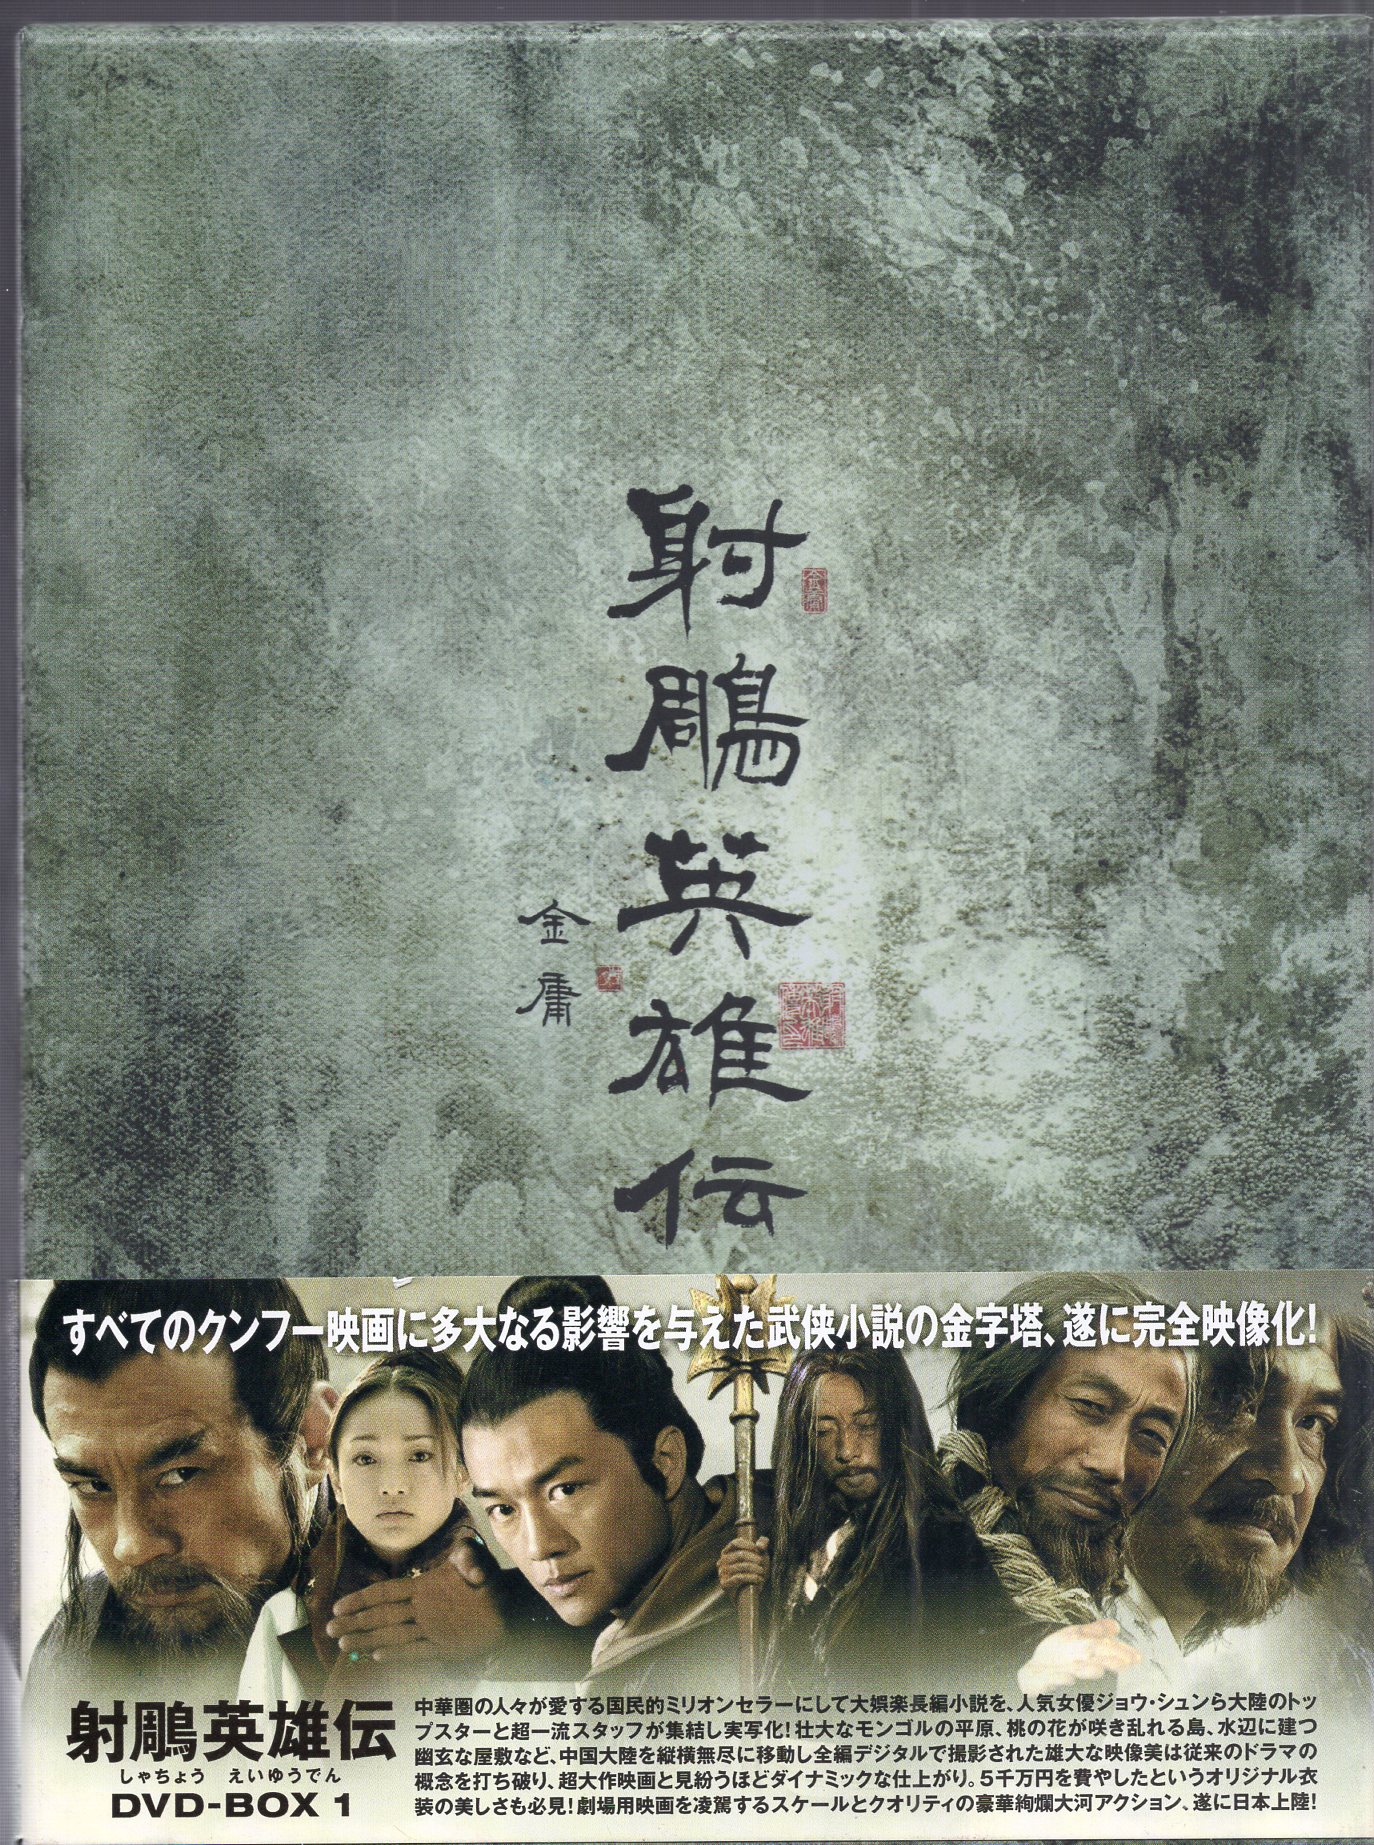 中国ドラマ 【射鵰英雄伝 】 DVD-BOX 1 + DVD-BOX 2 - TVドラマ